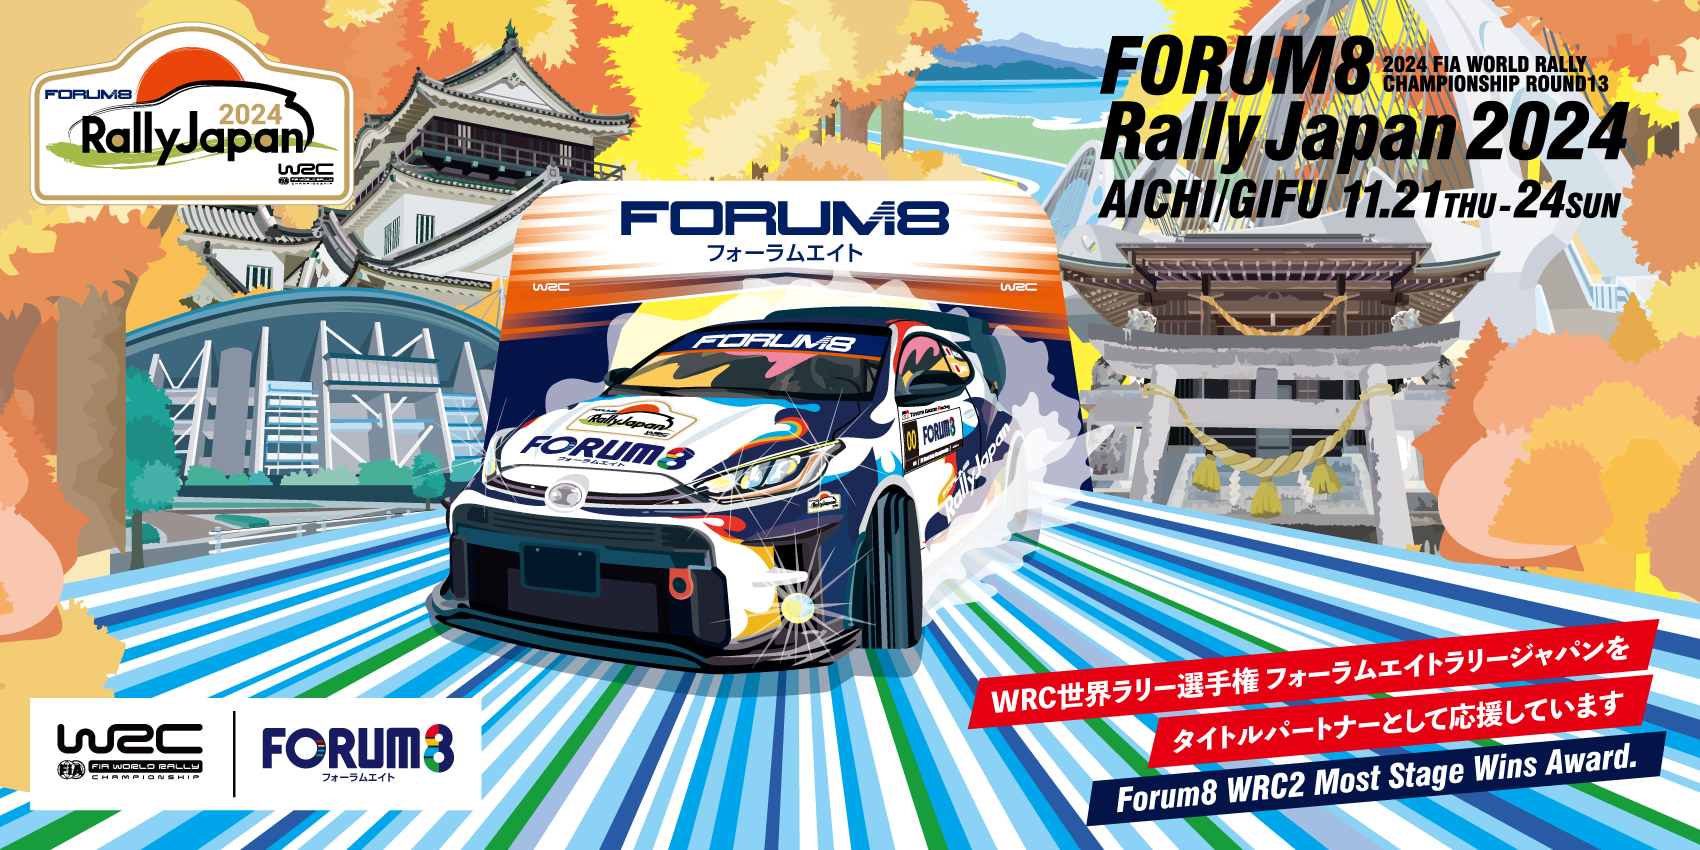 FORUM8 Rally Japan 2024